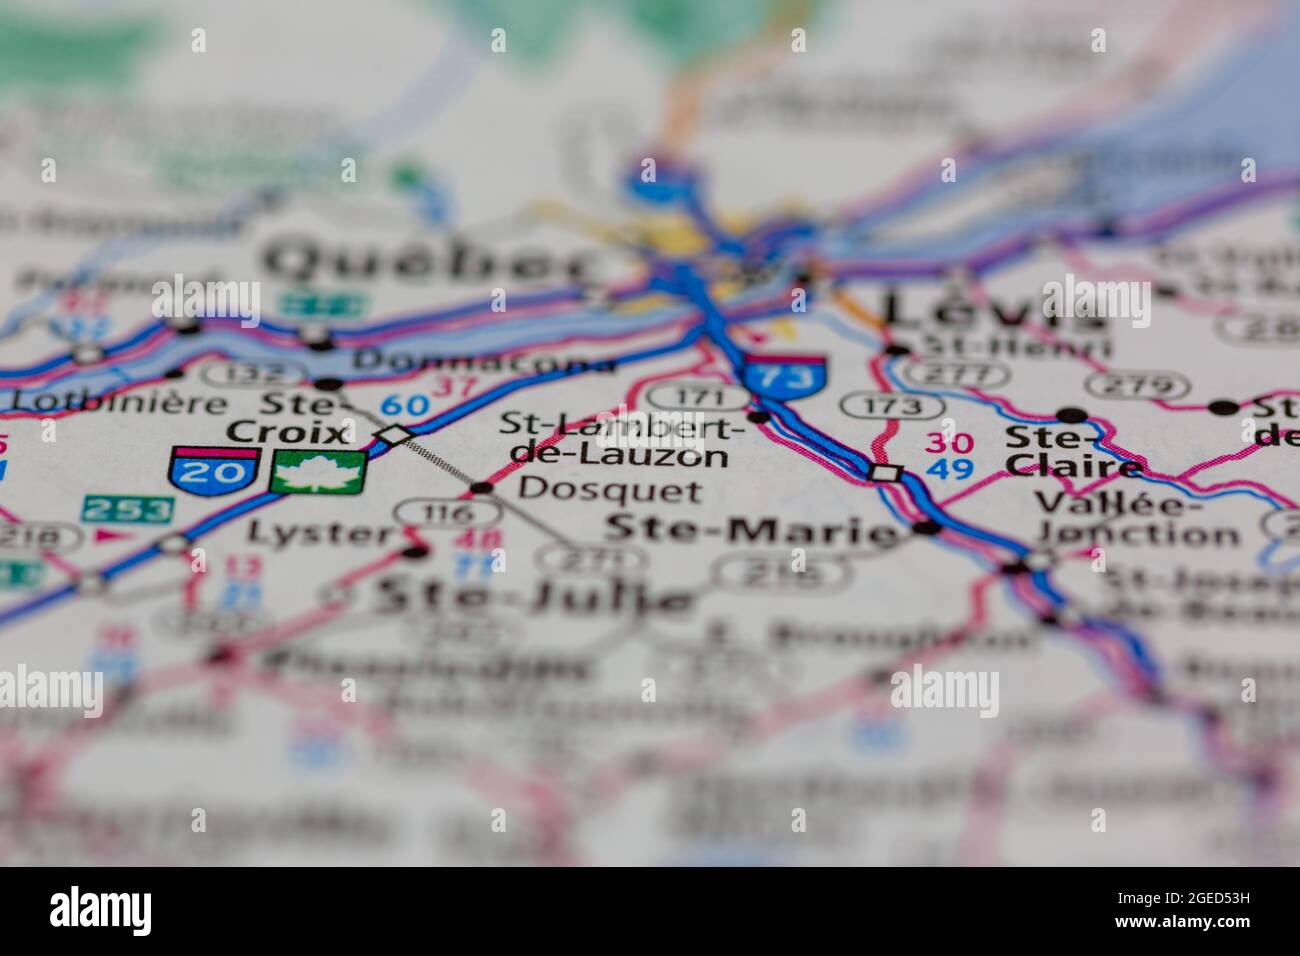 St-Lambert-de-Lauzon Quebec Kanada auf einer Straßenkarte oder Geografie-Karte angezeigt Stockfoto